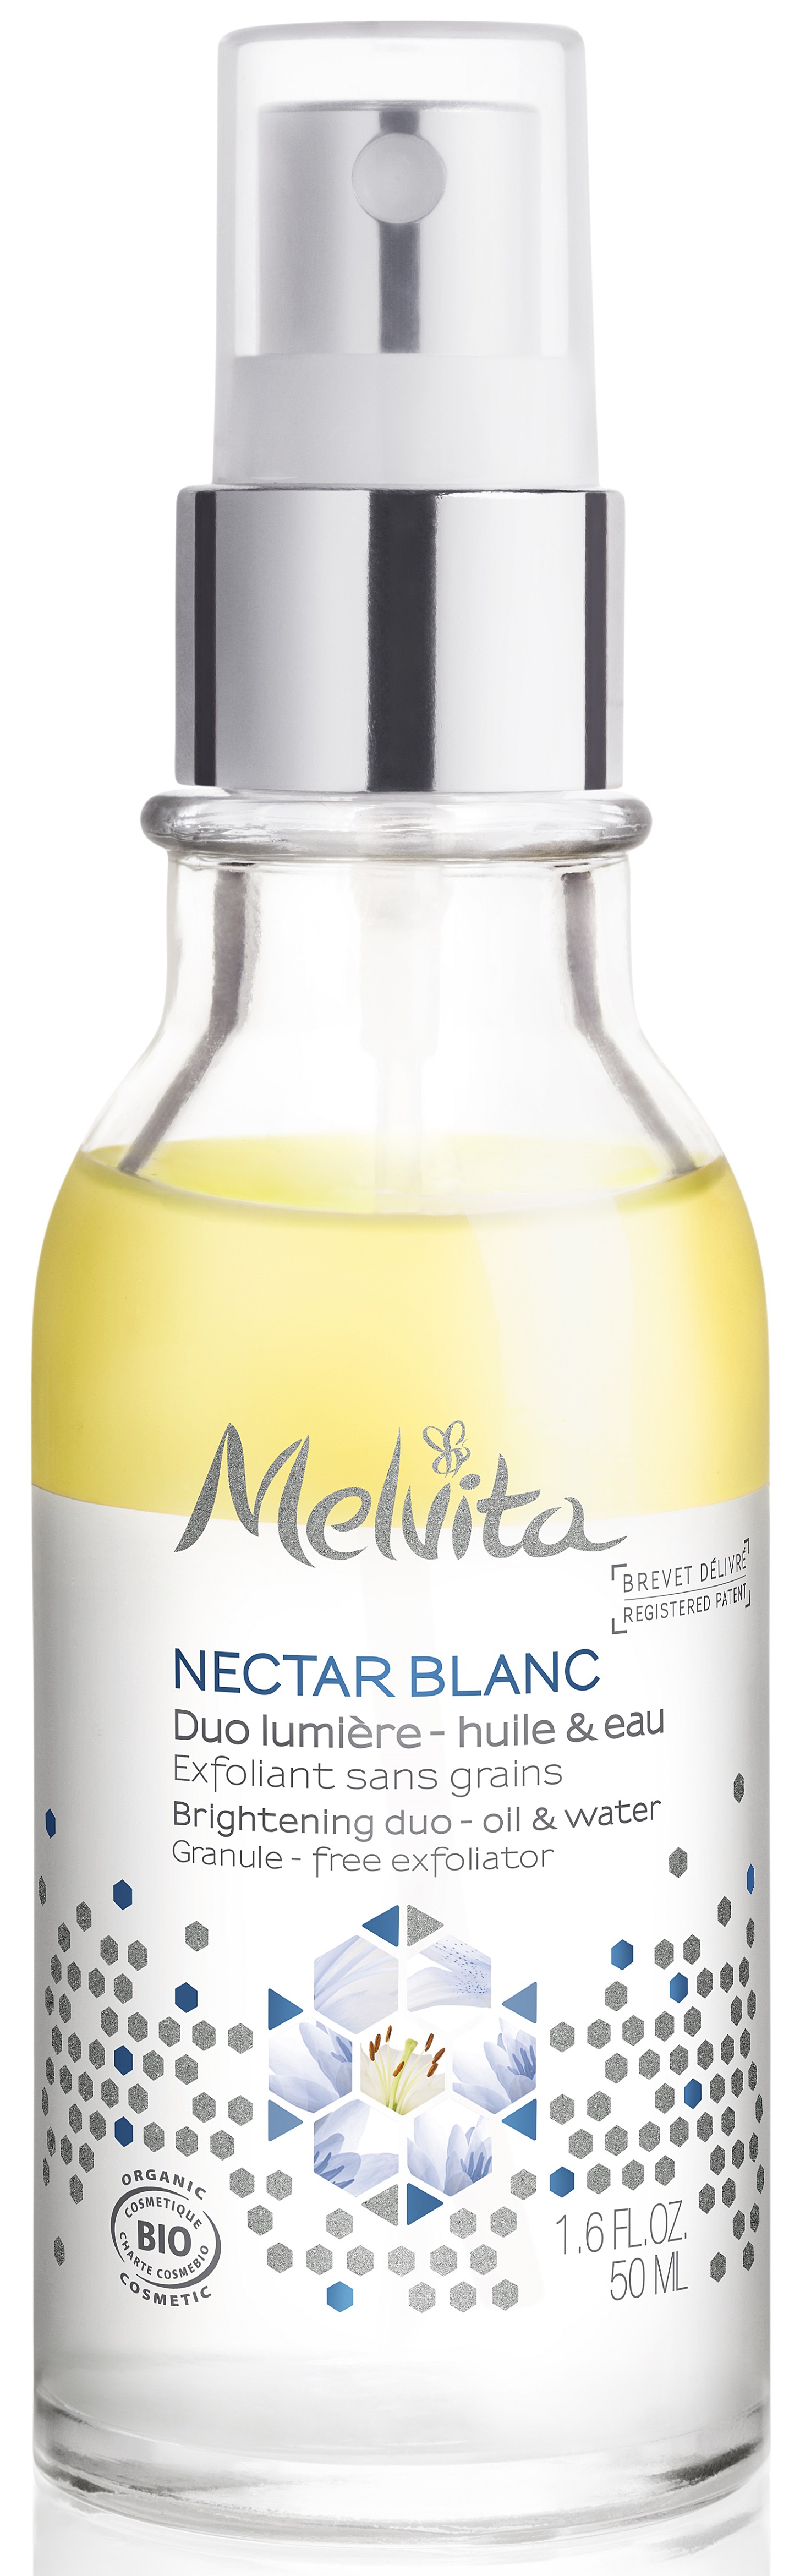 Melvita Nectar Blanc Brightening Duo-Pamper.my